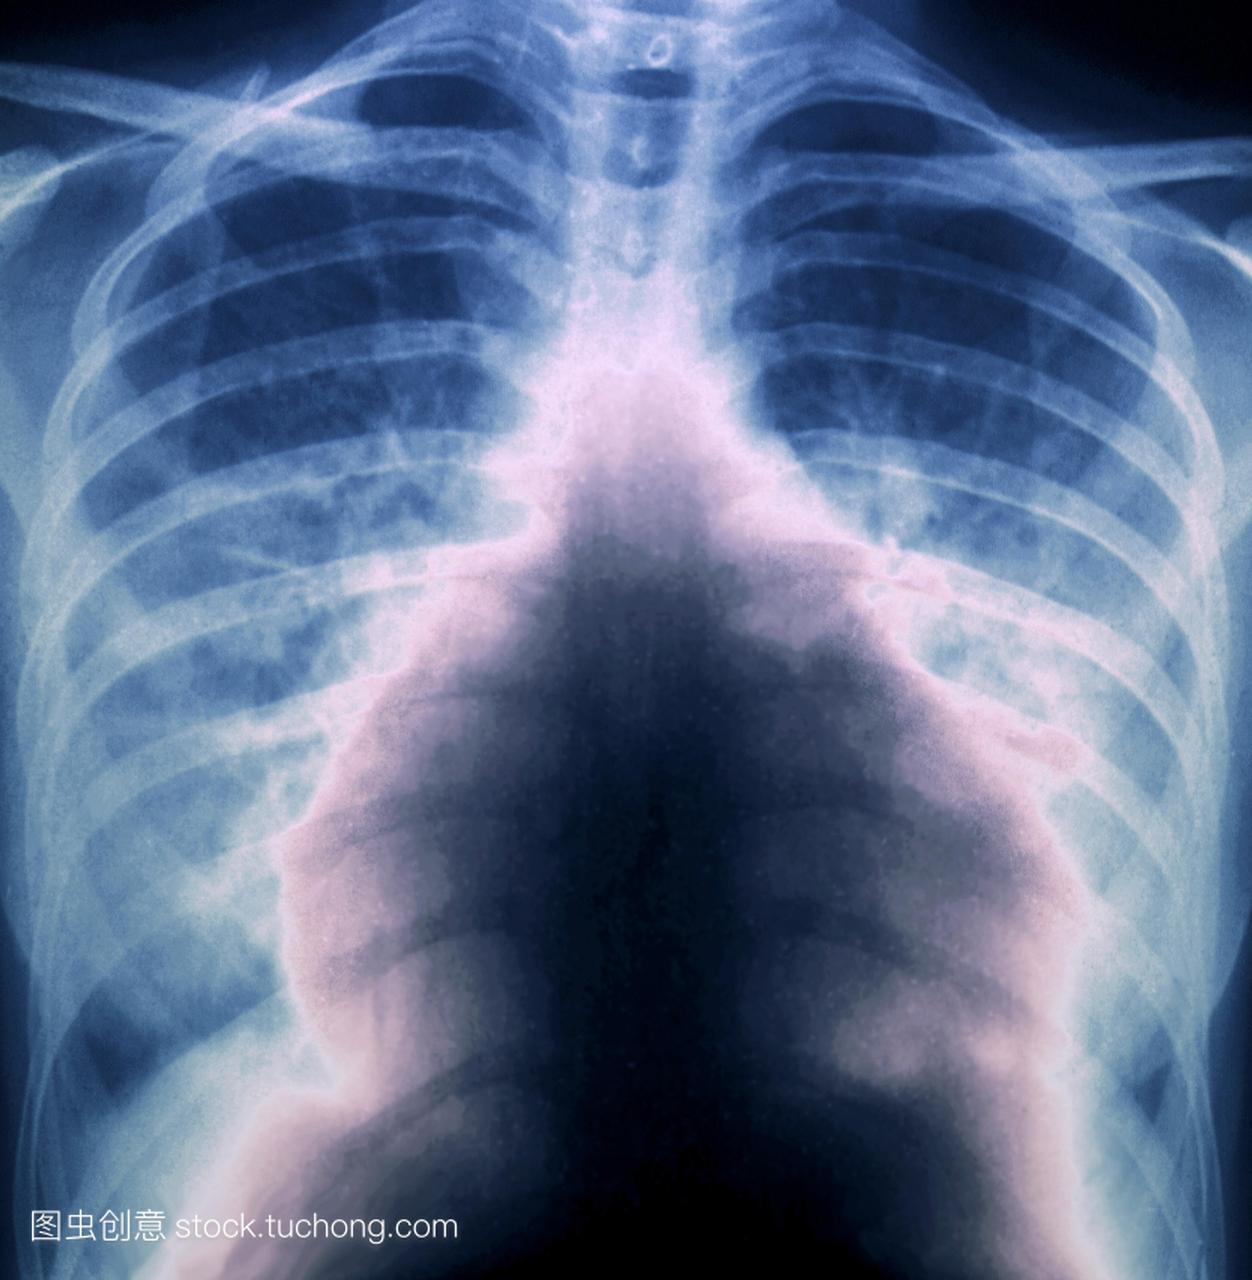 射线的大量肺栓塞患者的胸部。这发生在肺部动